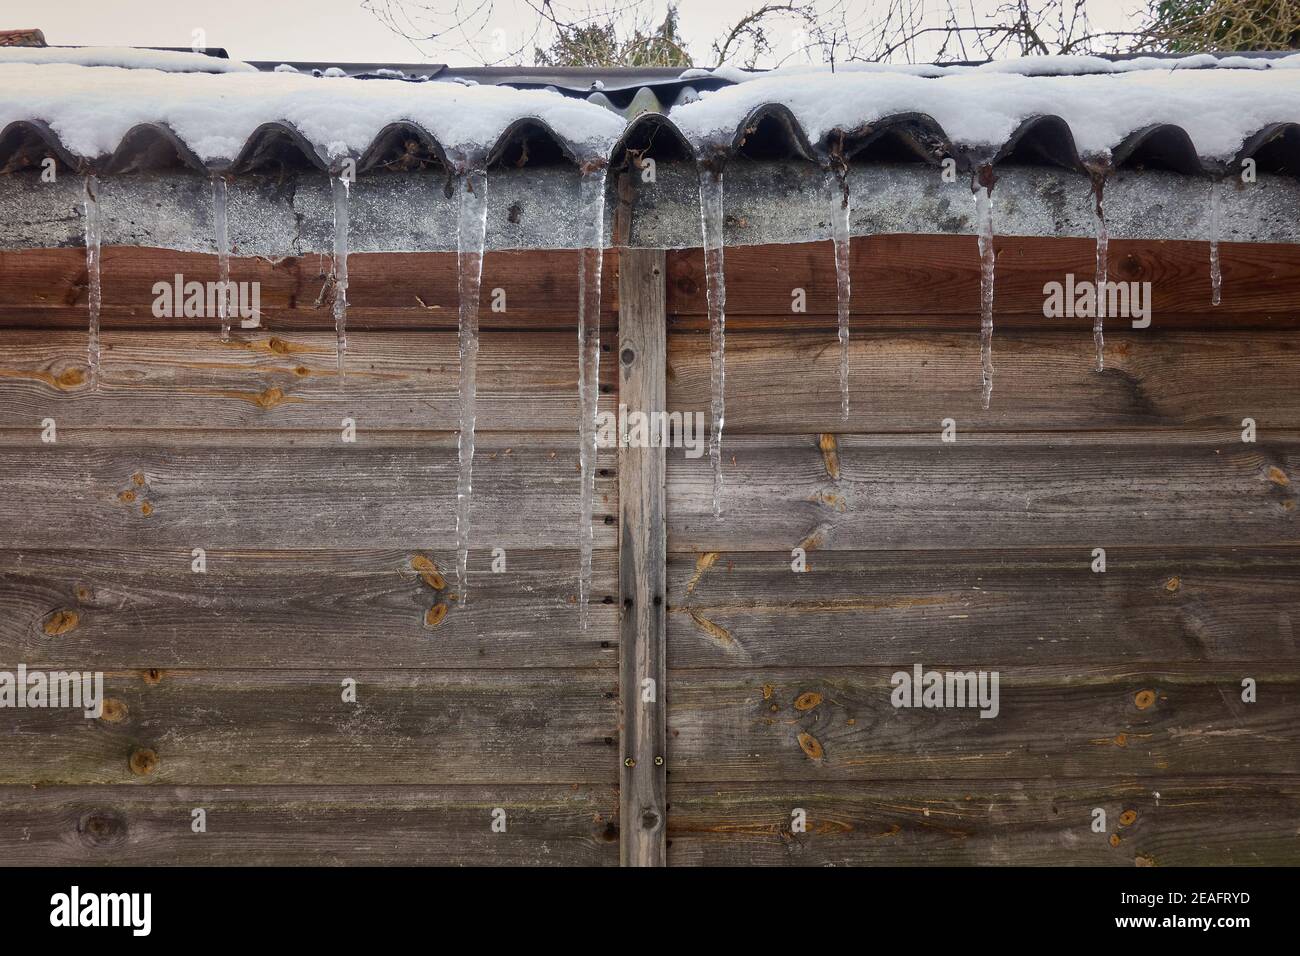 Grandes icículos congelados colgando del lado de un corrugado jardín cobertizo durante los inviernos fríos condiciones en febrero de 2021 Lincolnshire Reino Unido Foto de stock